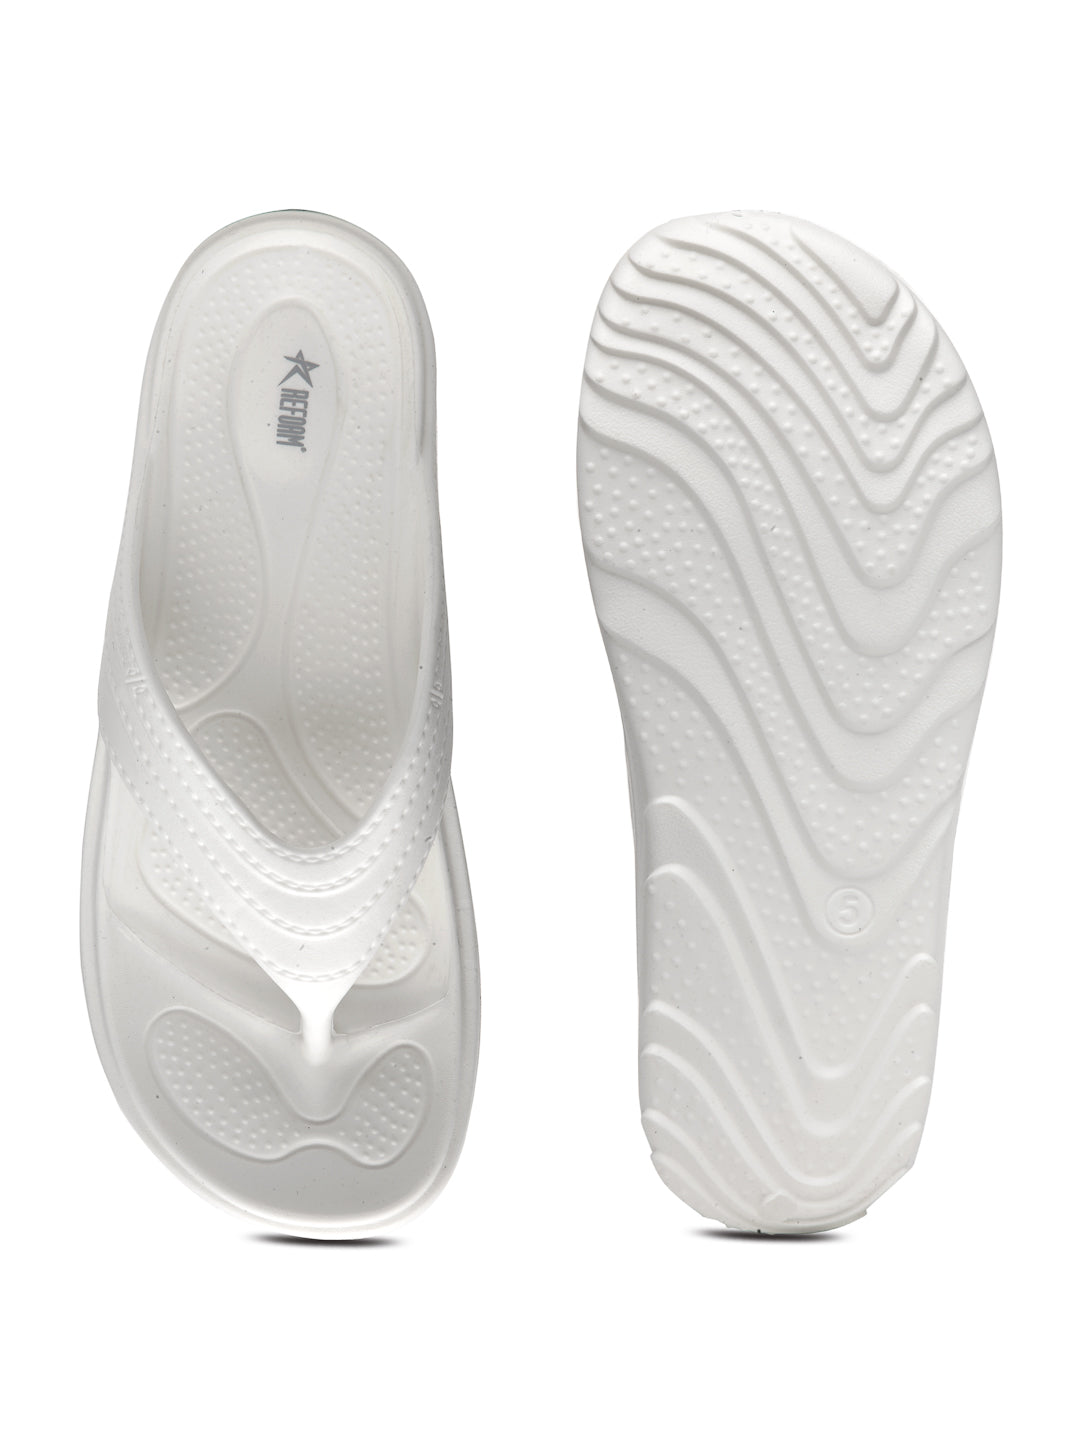 Off White Solid EVA Slip-On Sliders For Women